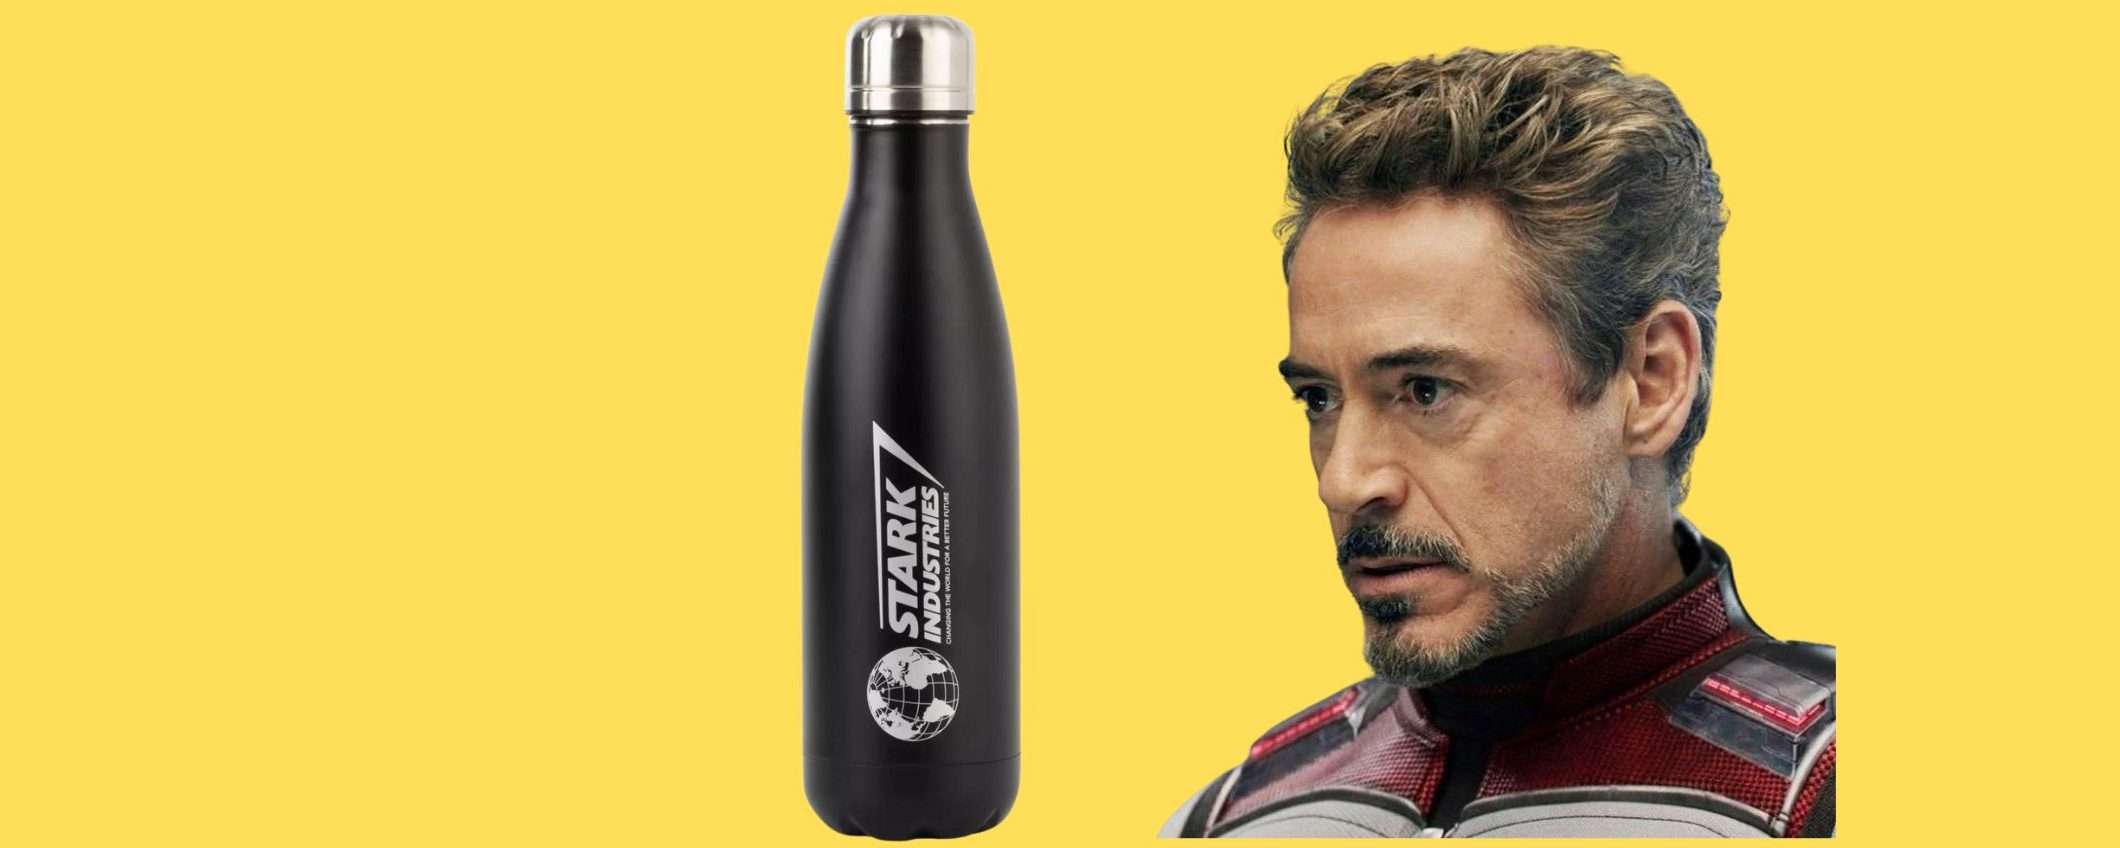 Offerta Imperdibile per i fan di Iron Man: Borraccia Stark Industries a meno di 10€